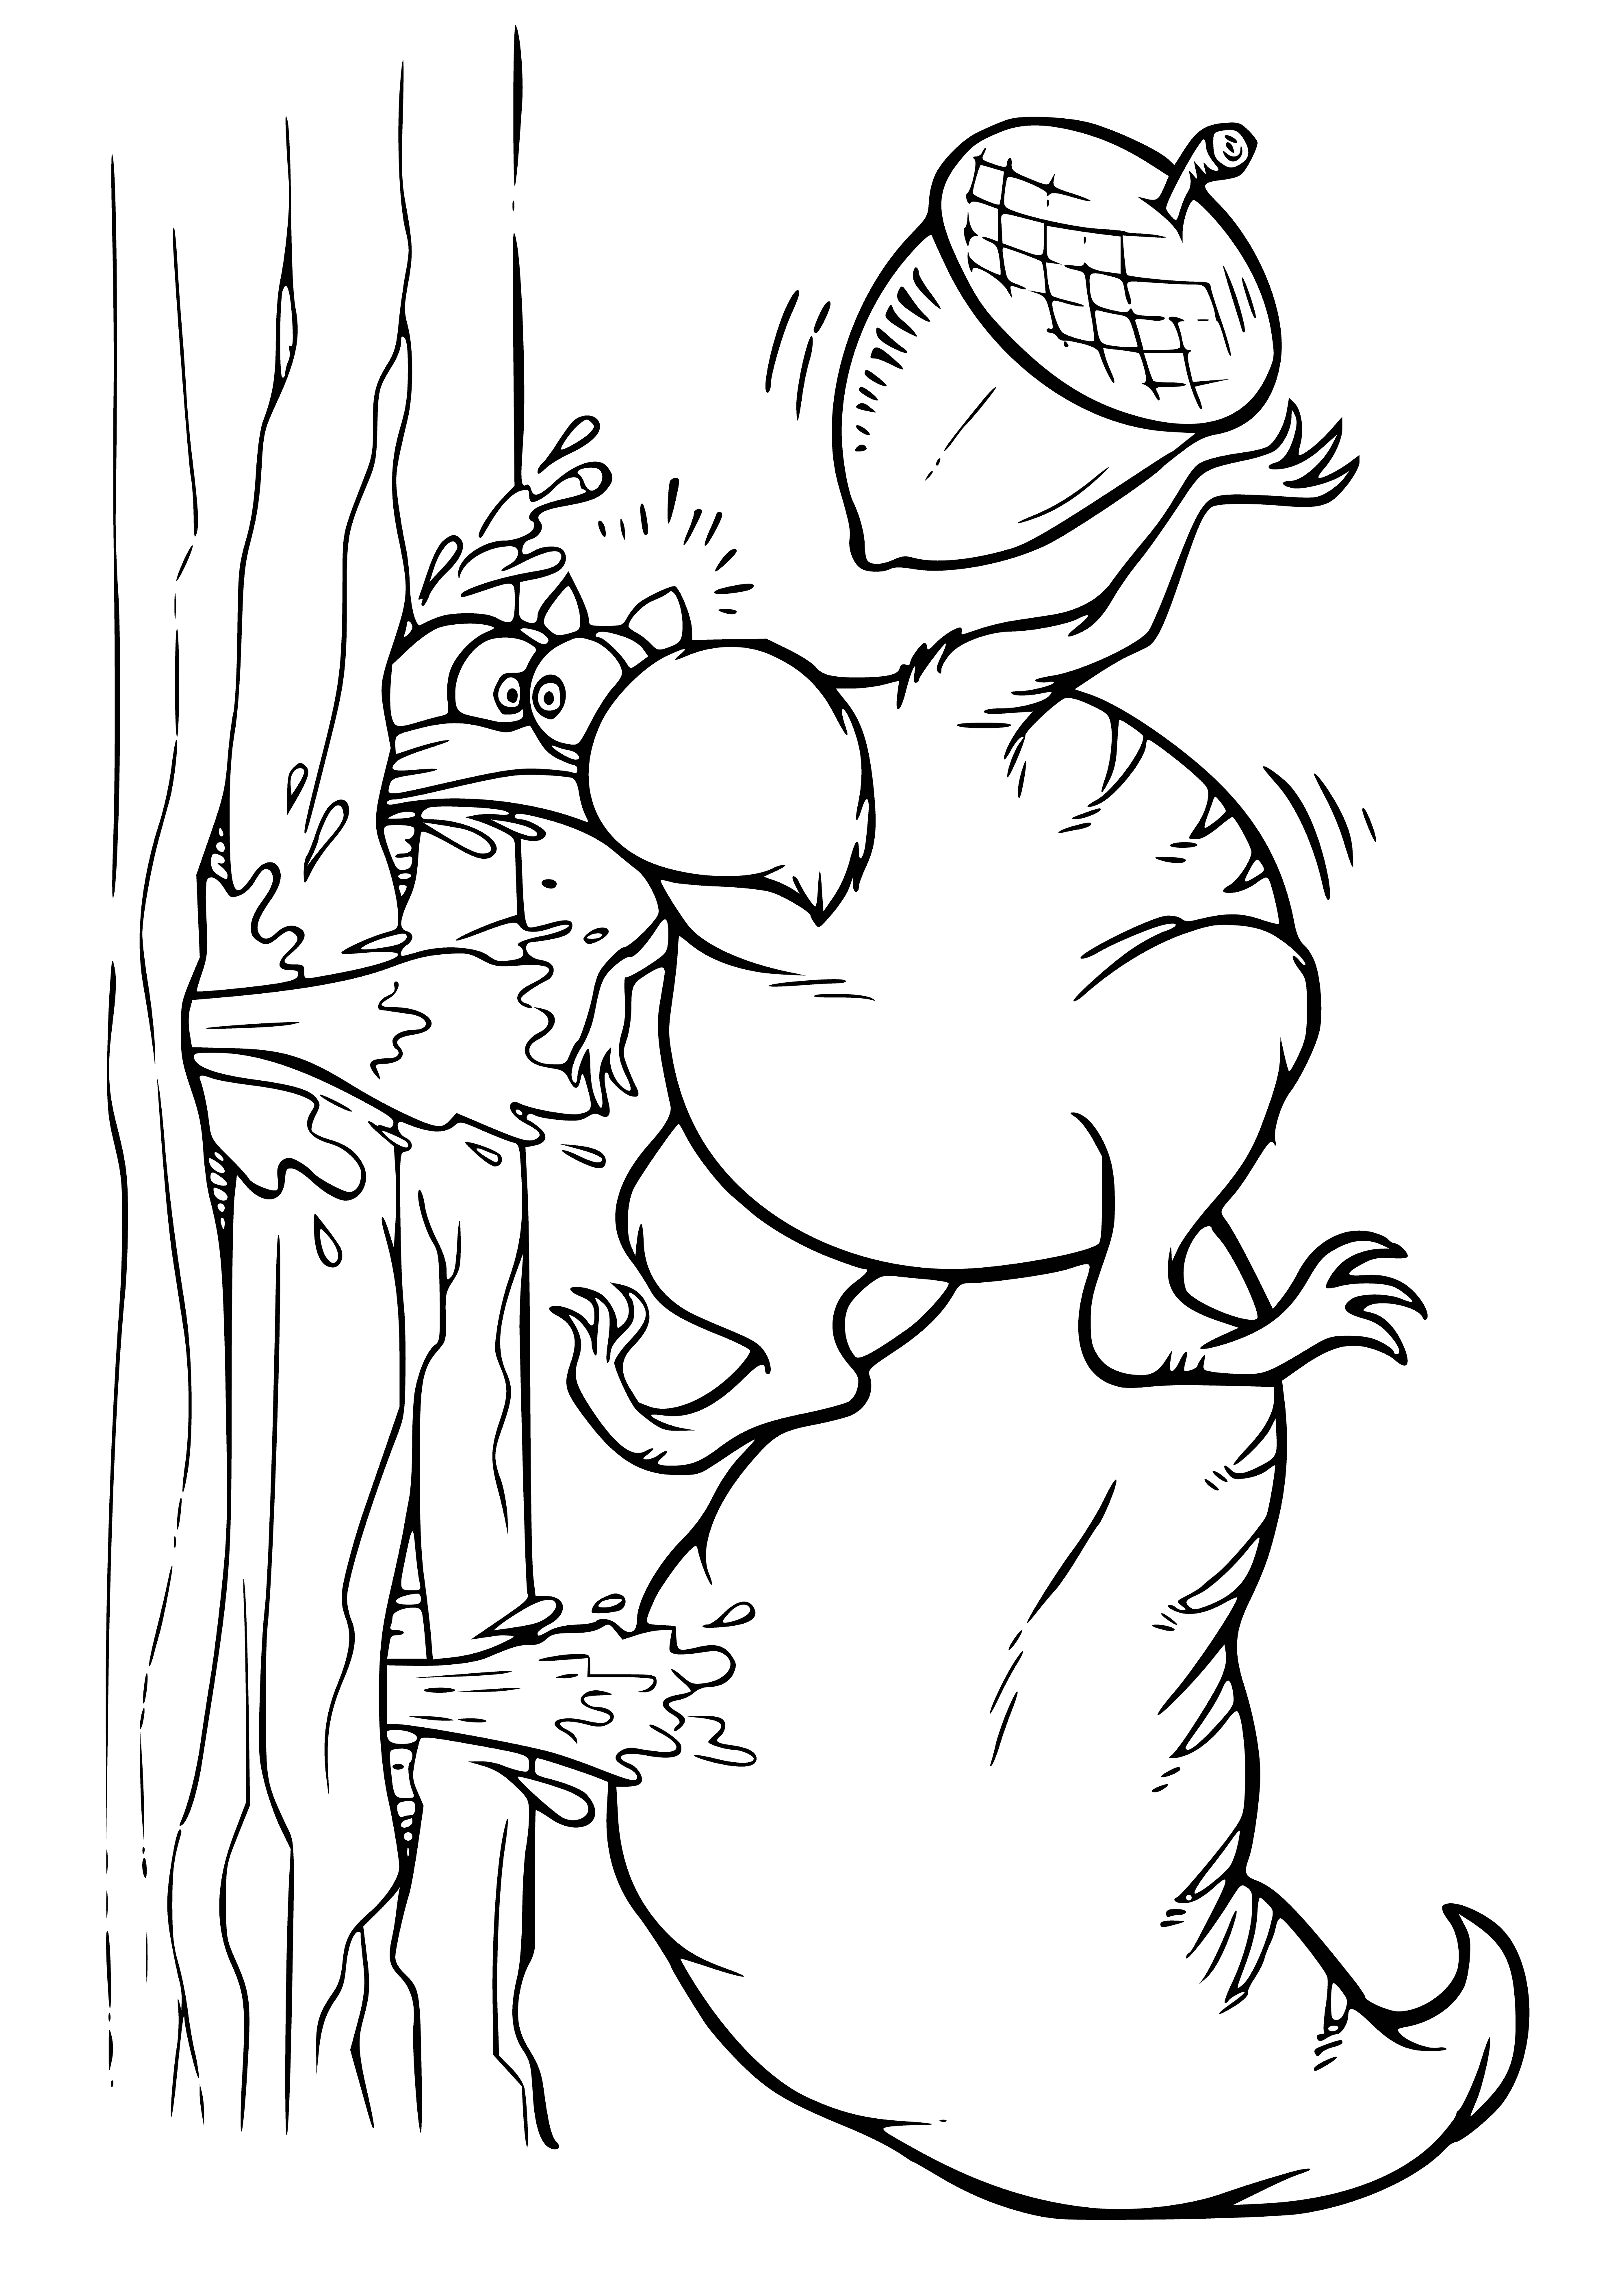 Squirrel Scrat coloring page